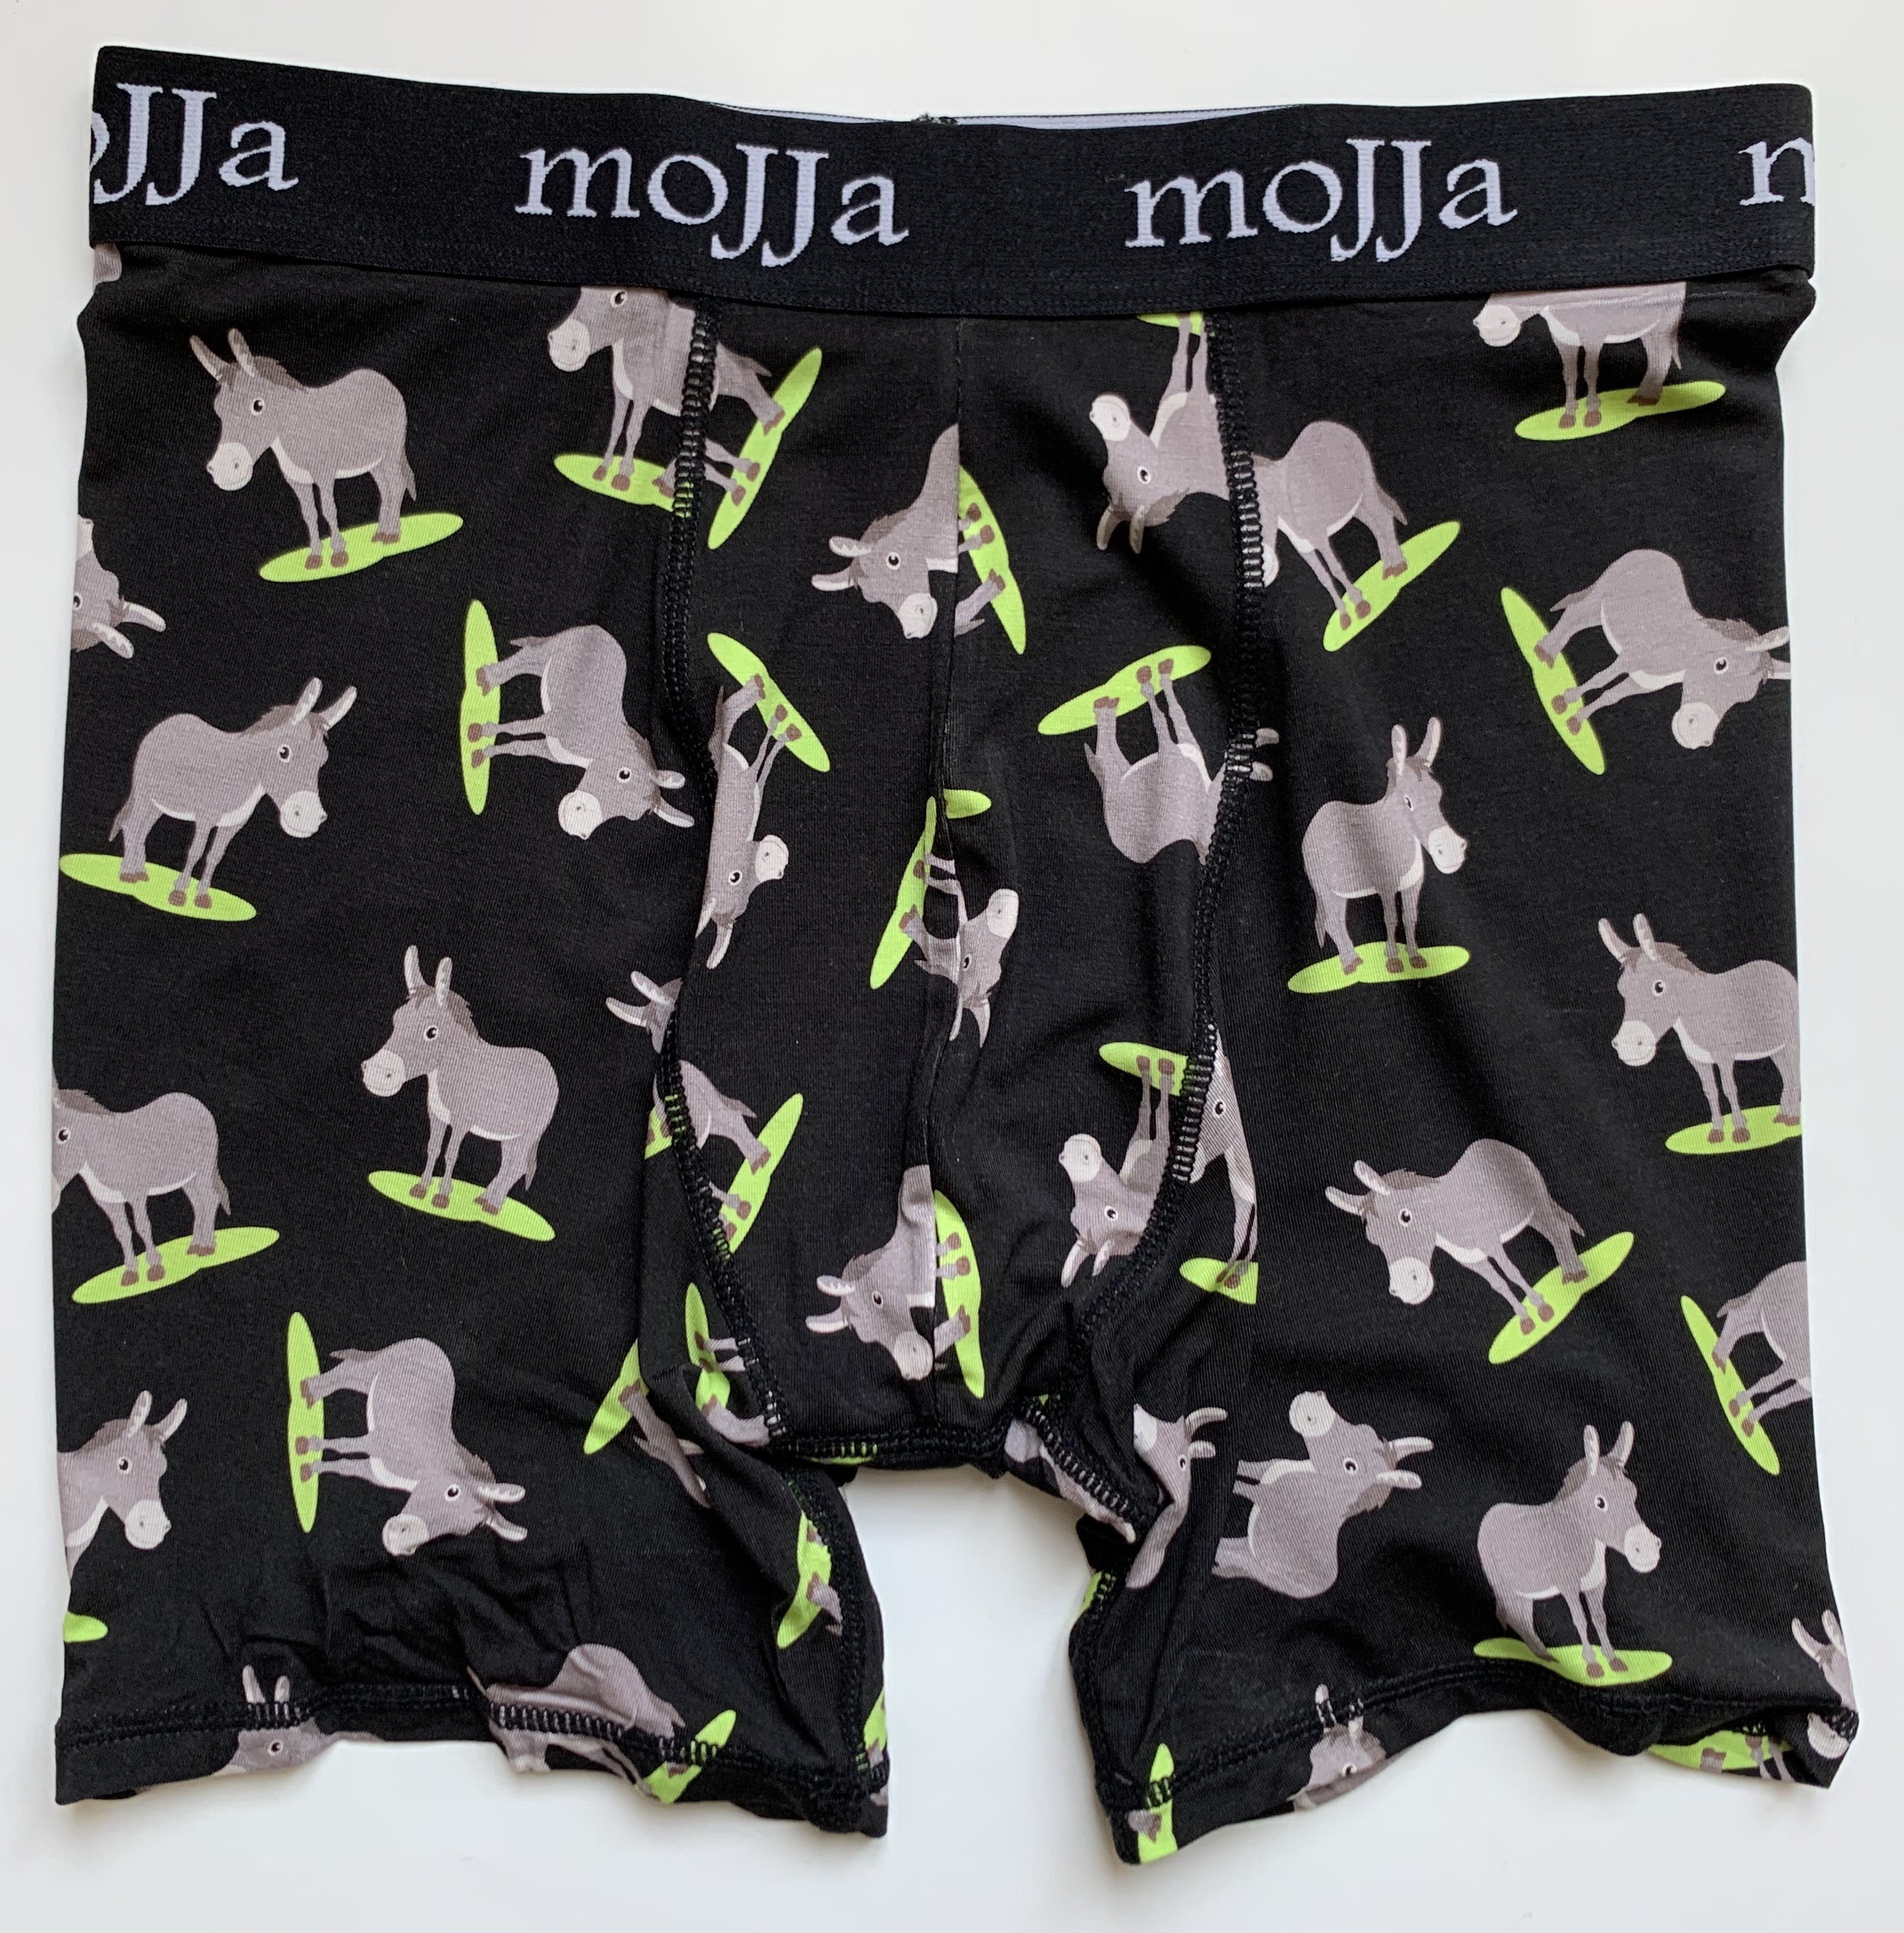 Gray Unicorn Underwear -  Canada